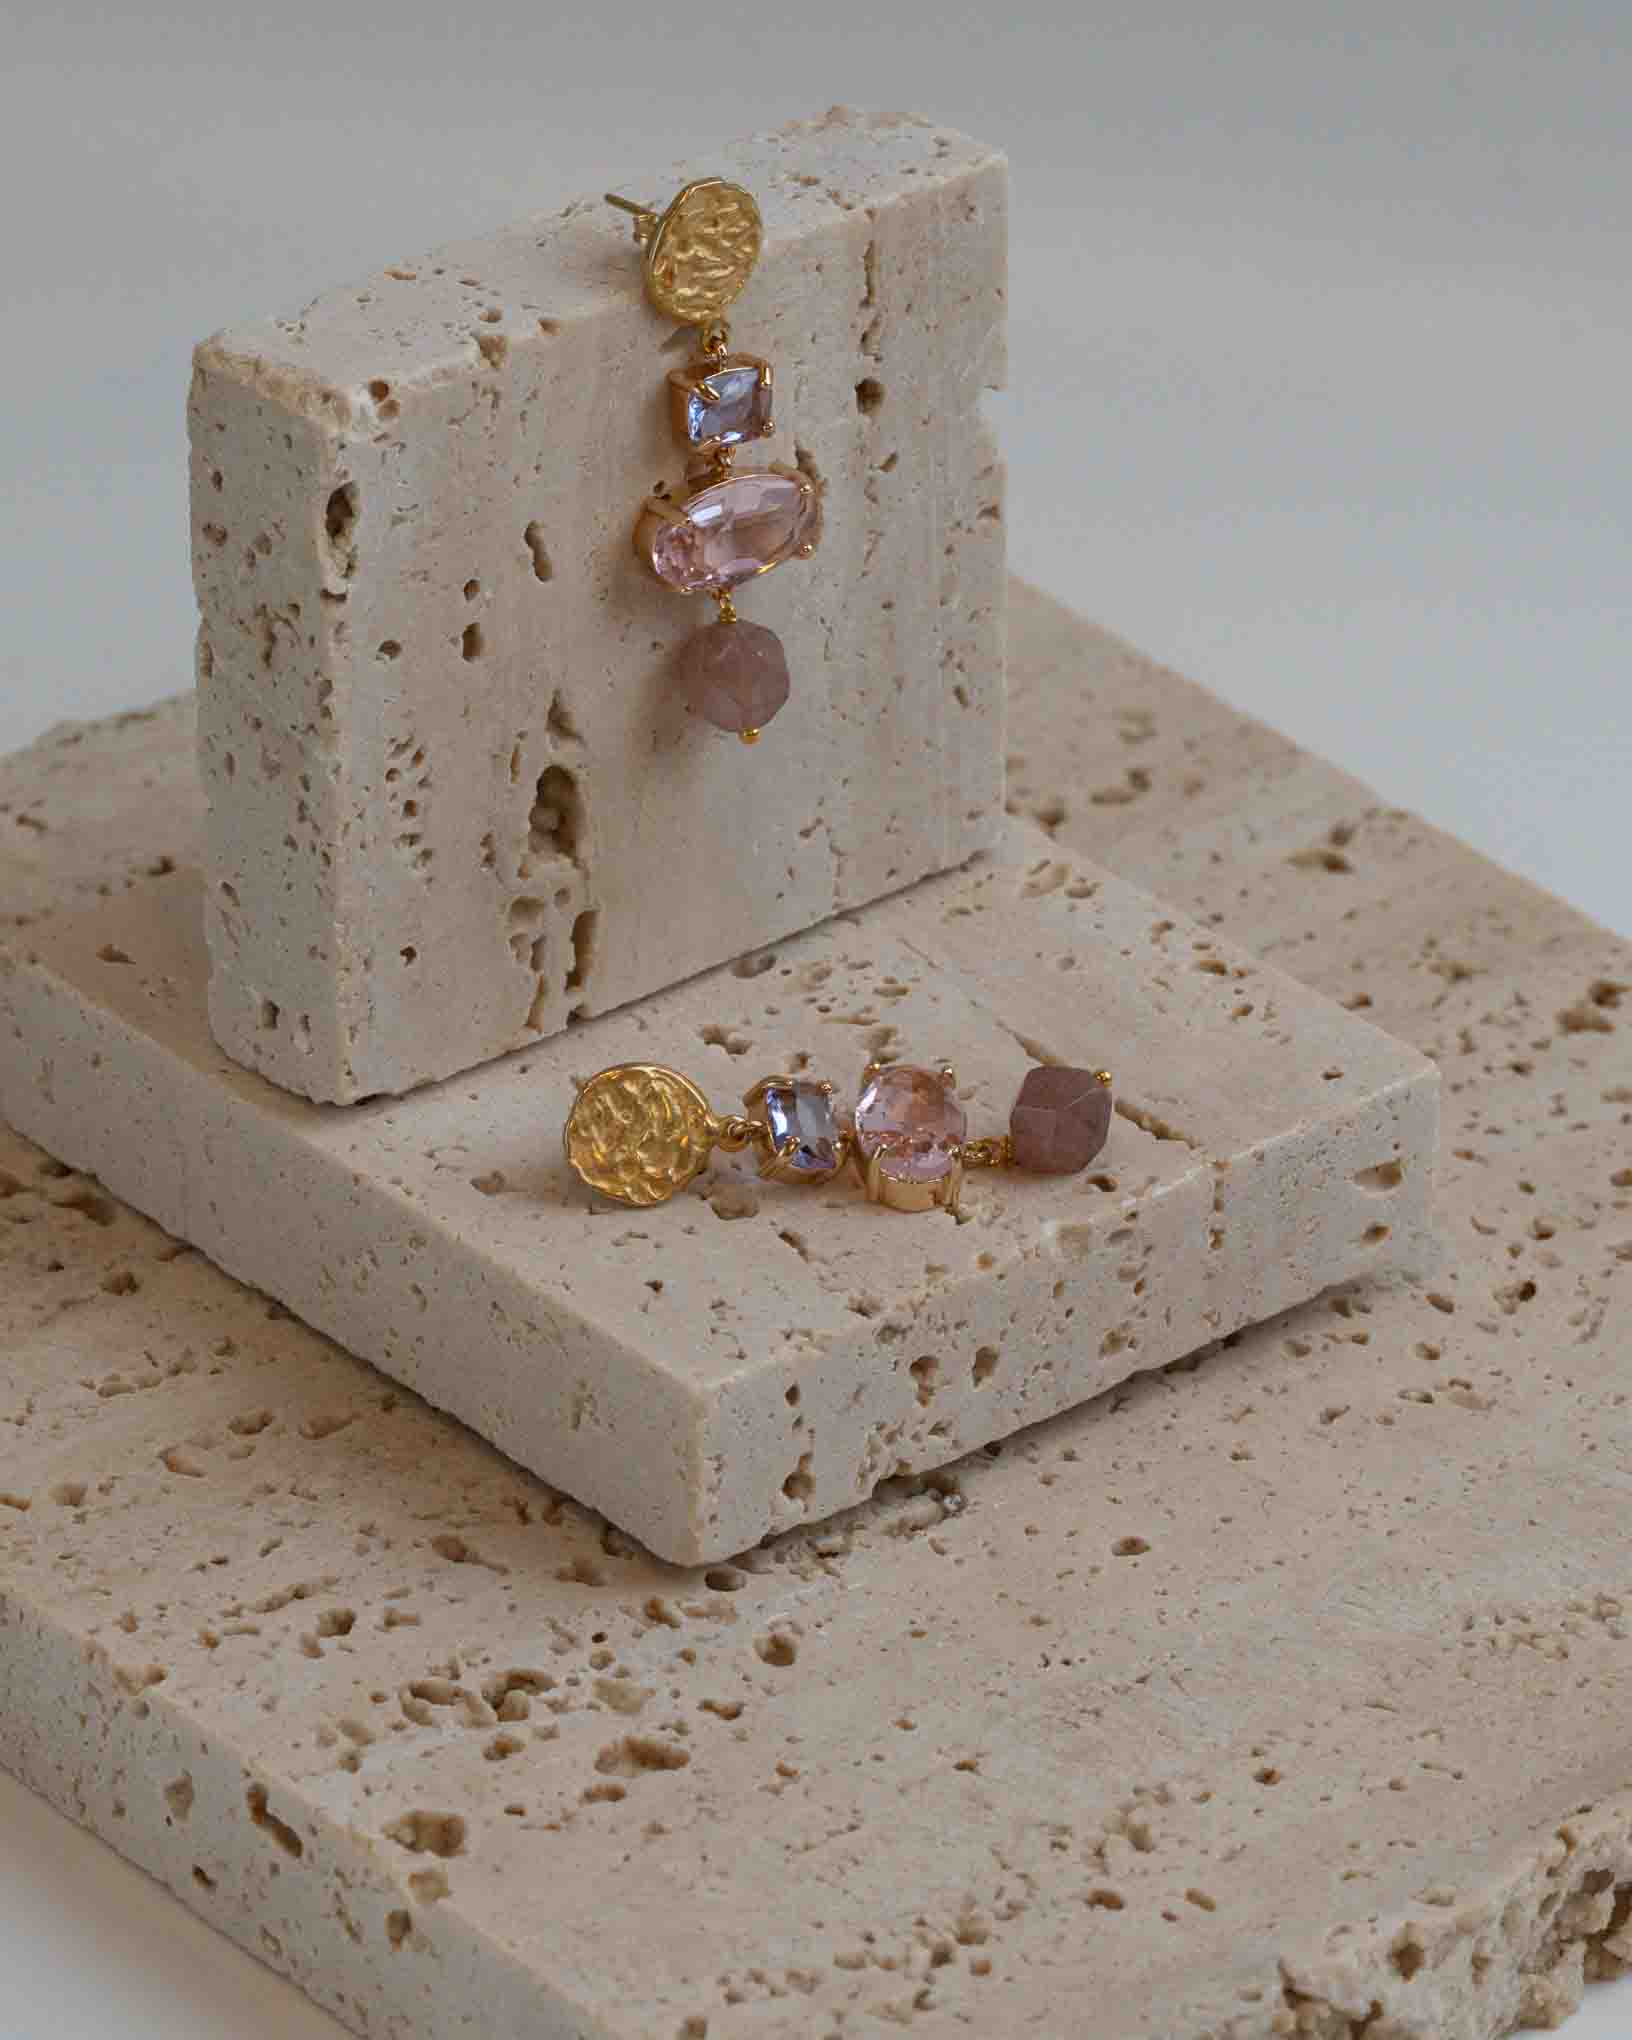 Ohrring Ravello aus der Kollektion I Classici von Donna Rachele Jewelry